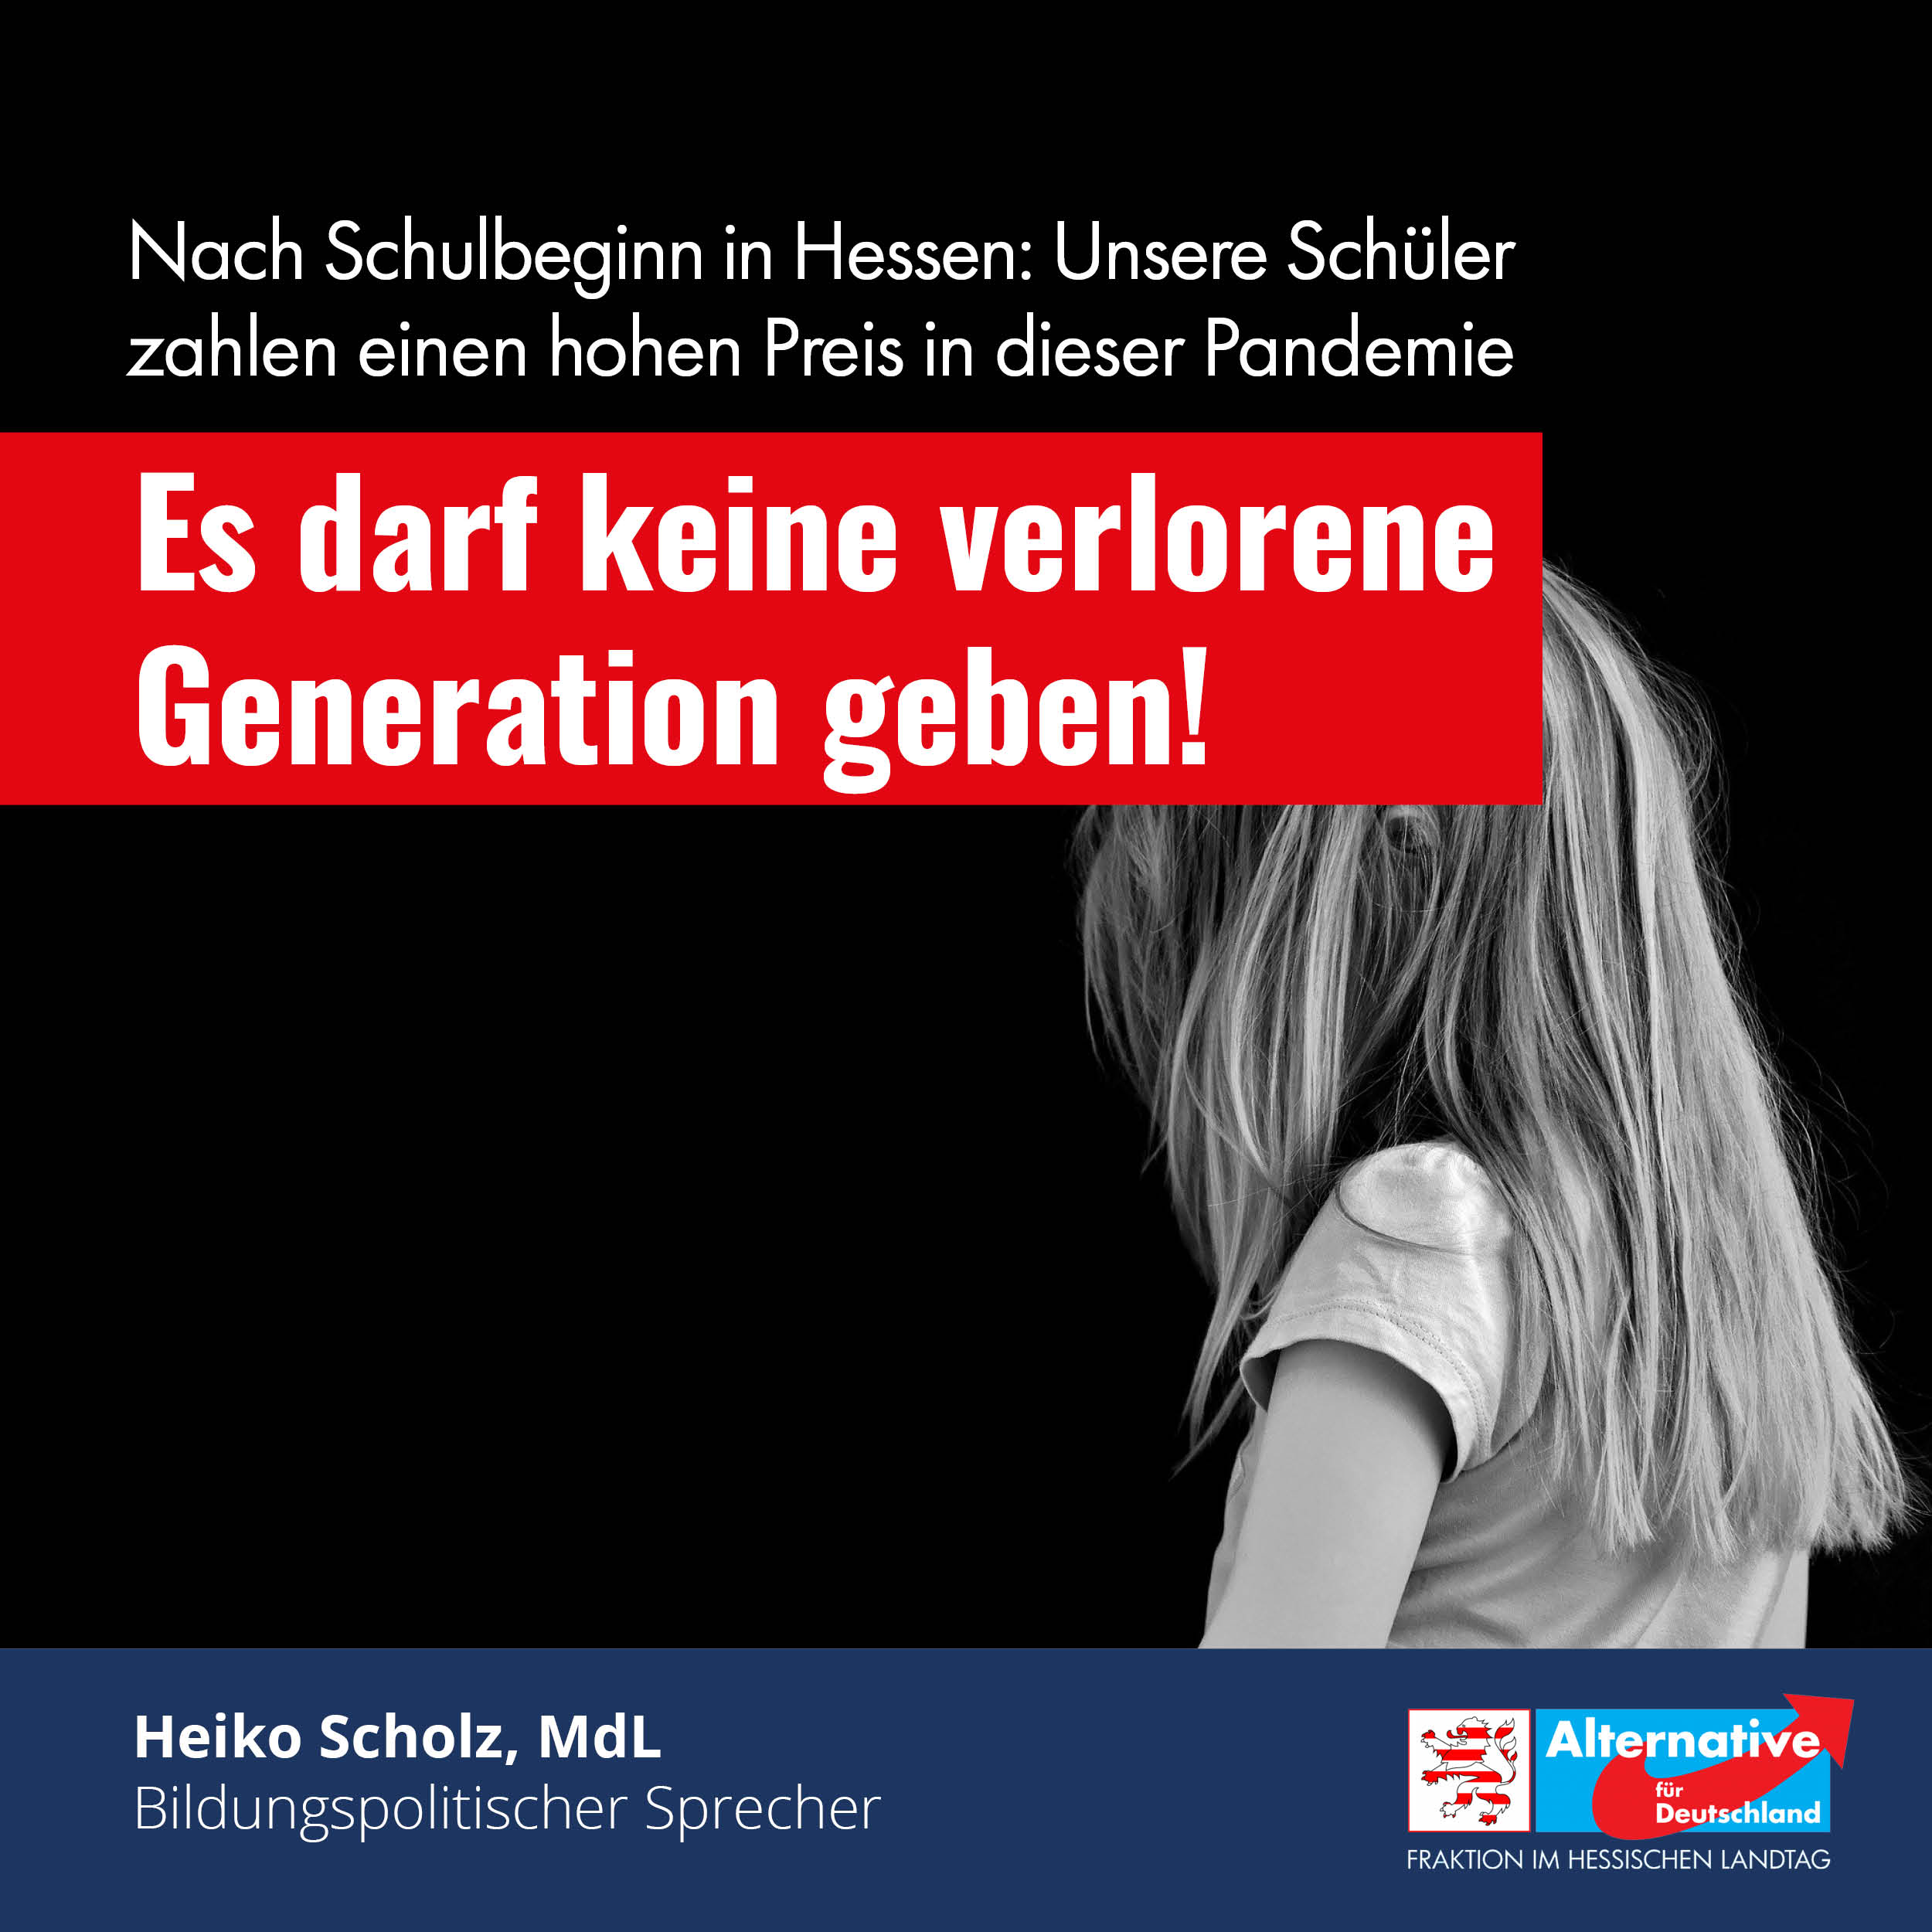 You are currently viewing Schulunterricht in Hessen: Es darf keine verlorene Generation geben